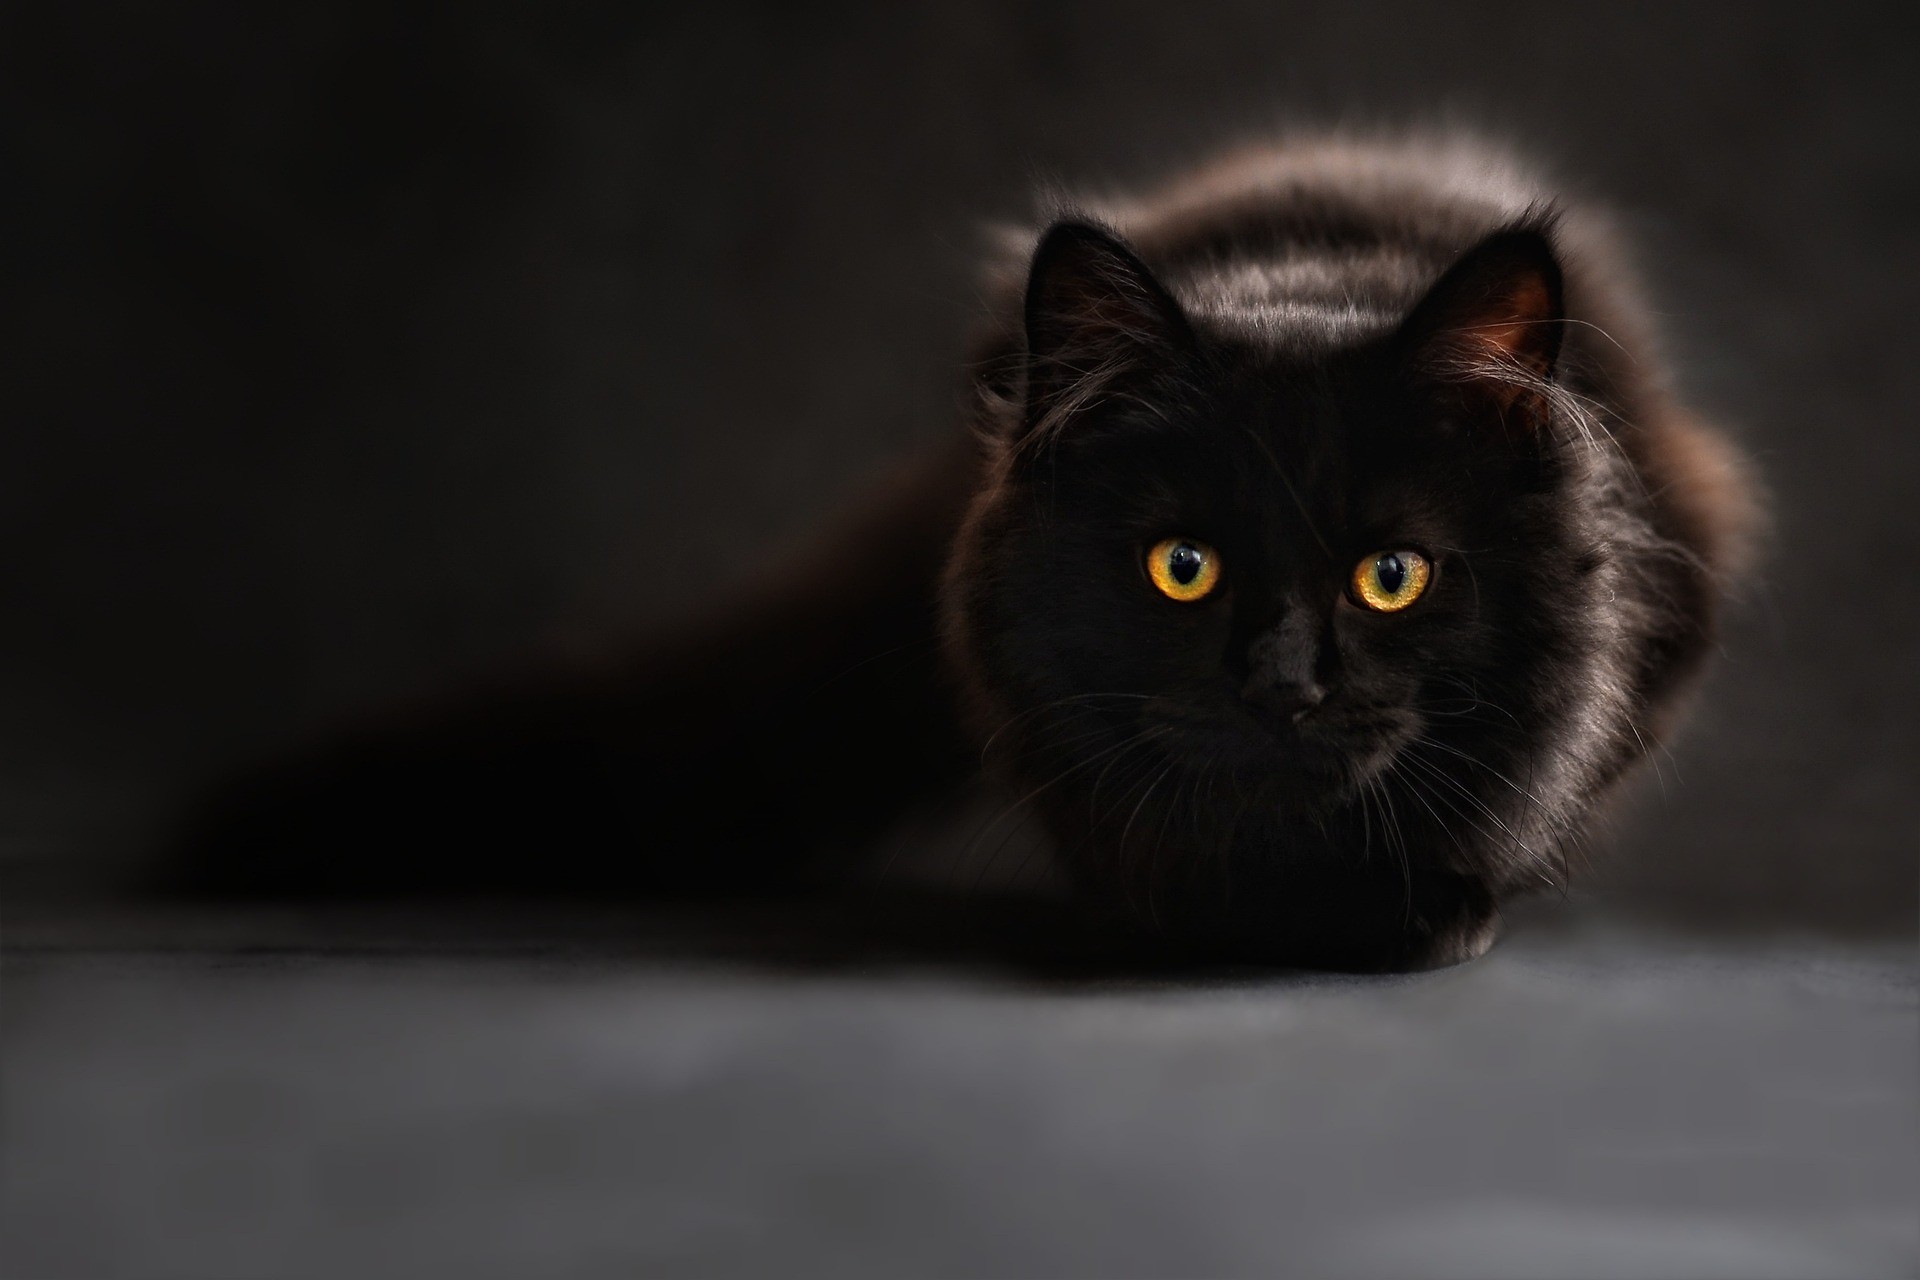 Schwarze Katze / Tiere zu Weihnachten (Quelle: Pixabay.com)